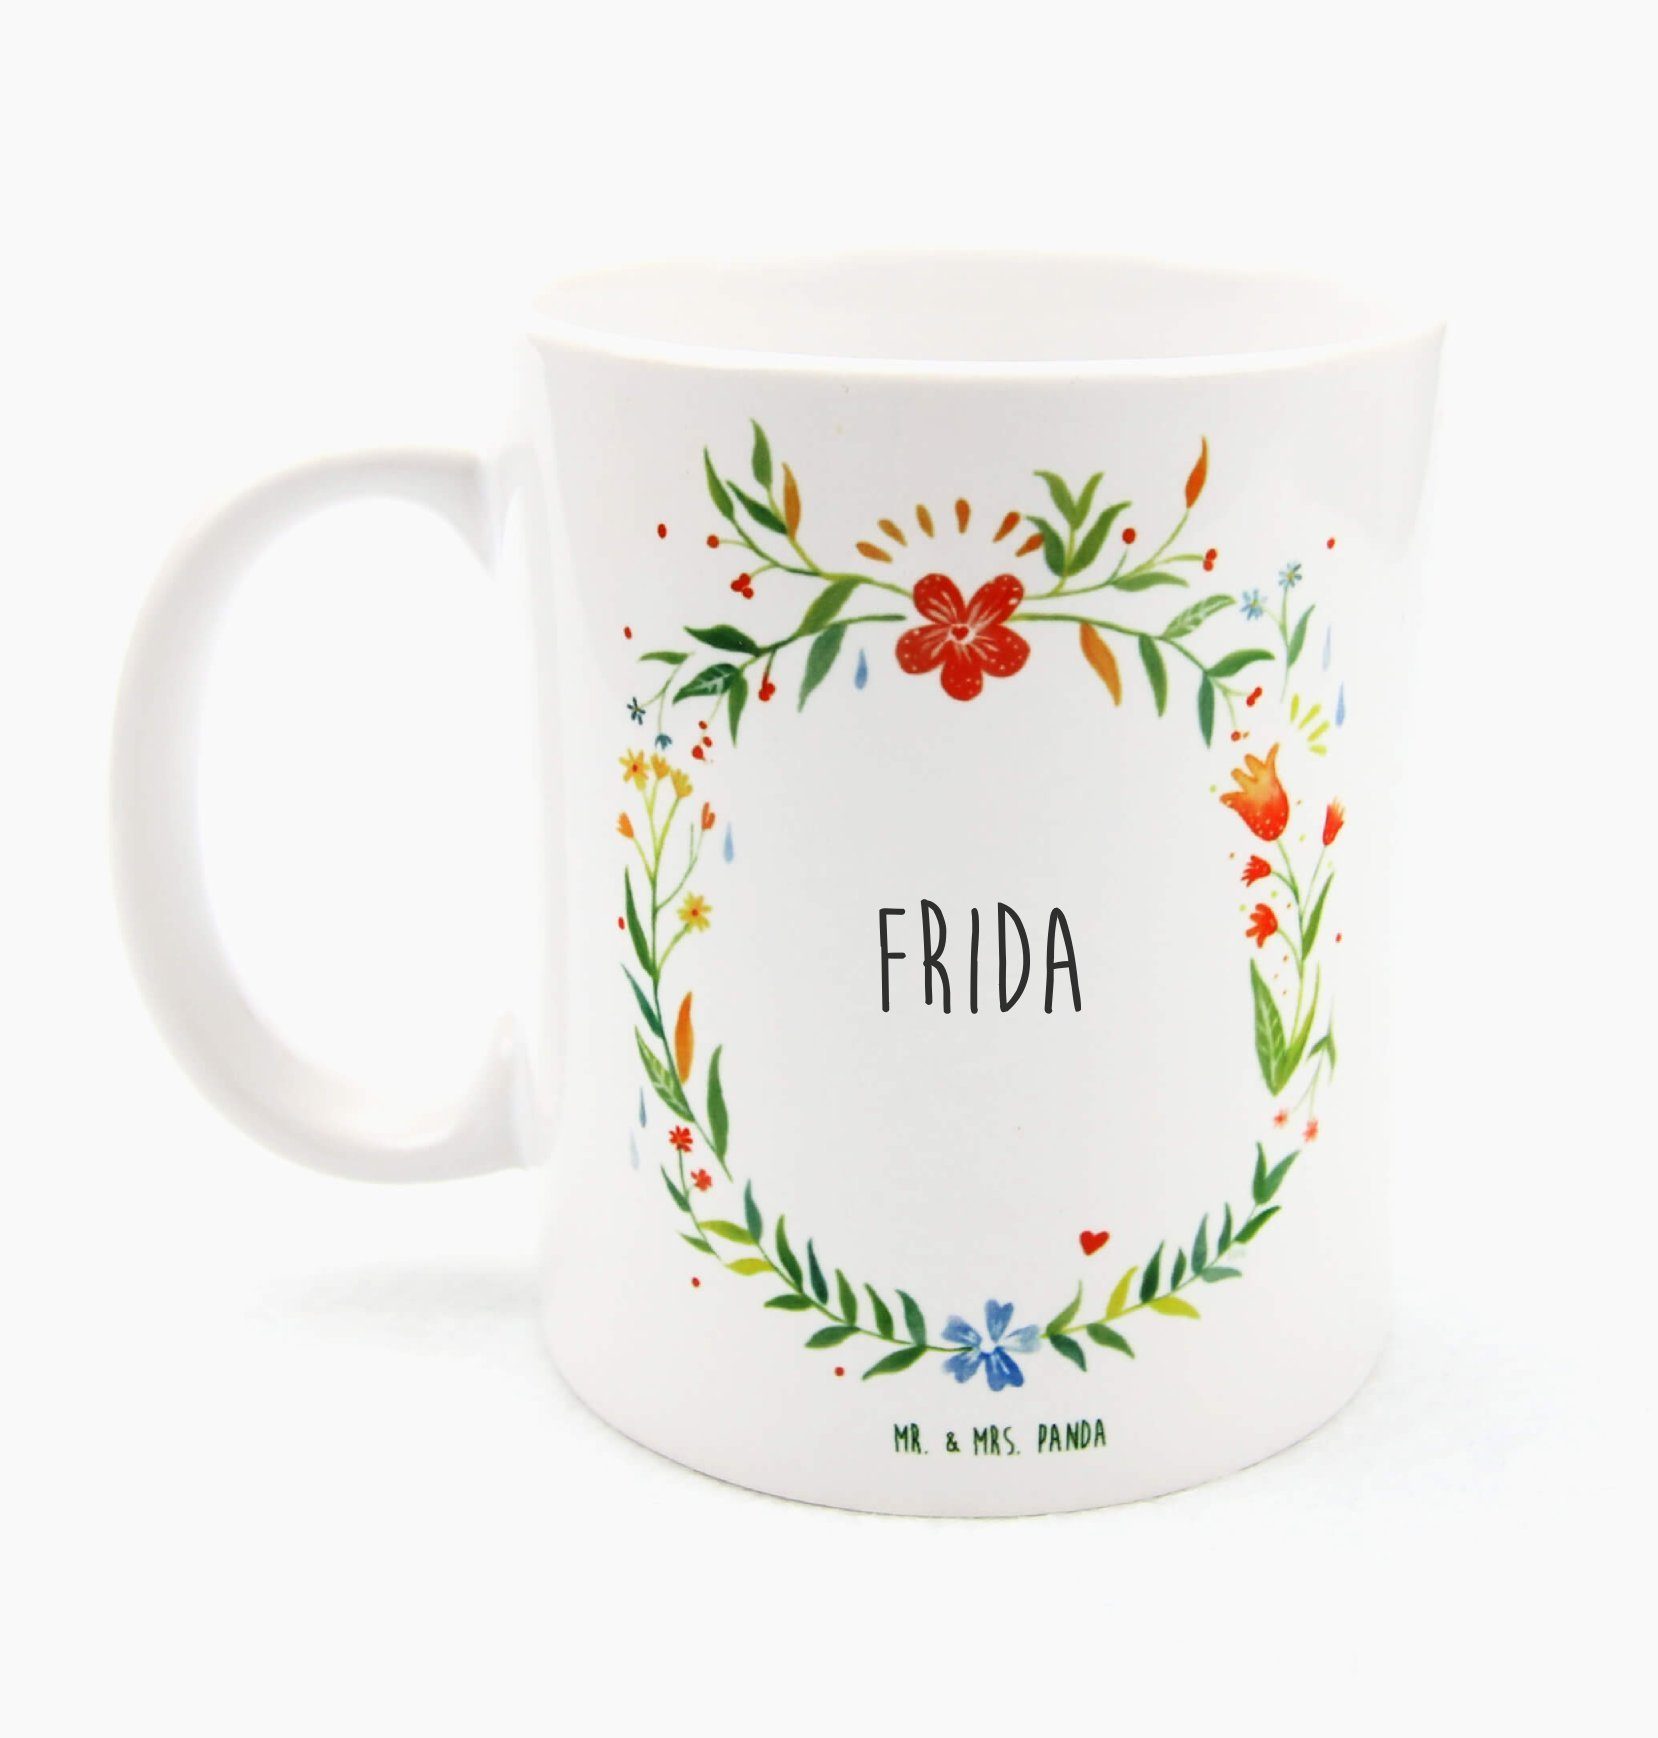 Mr. & Mrs. Panda Tasse Frida - Geschenk, Tasse Sprüche, Tasse Motive, Teetasse, Geschenk Tas, Keramik